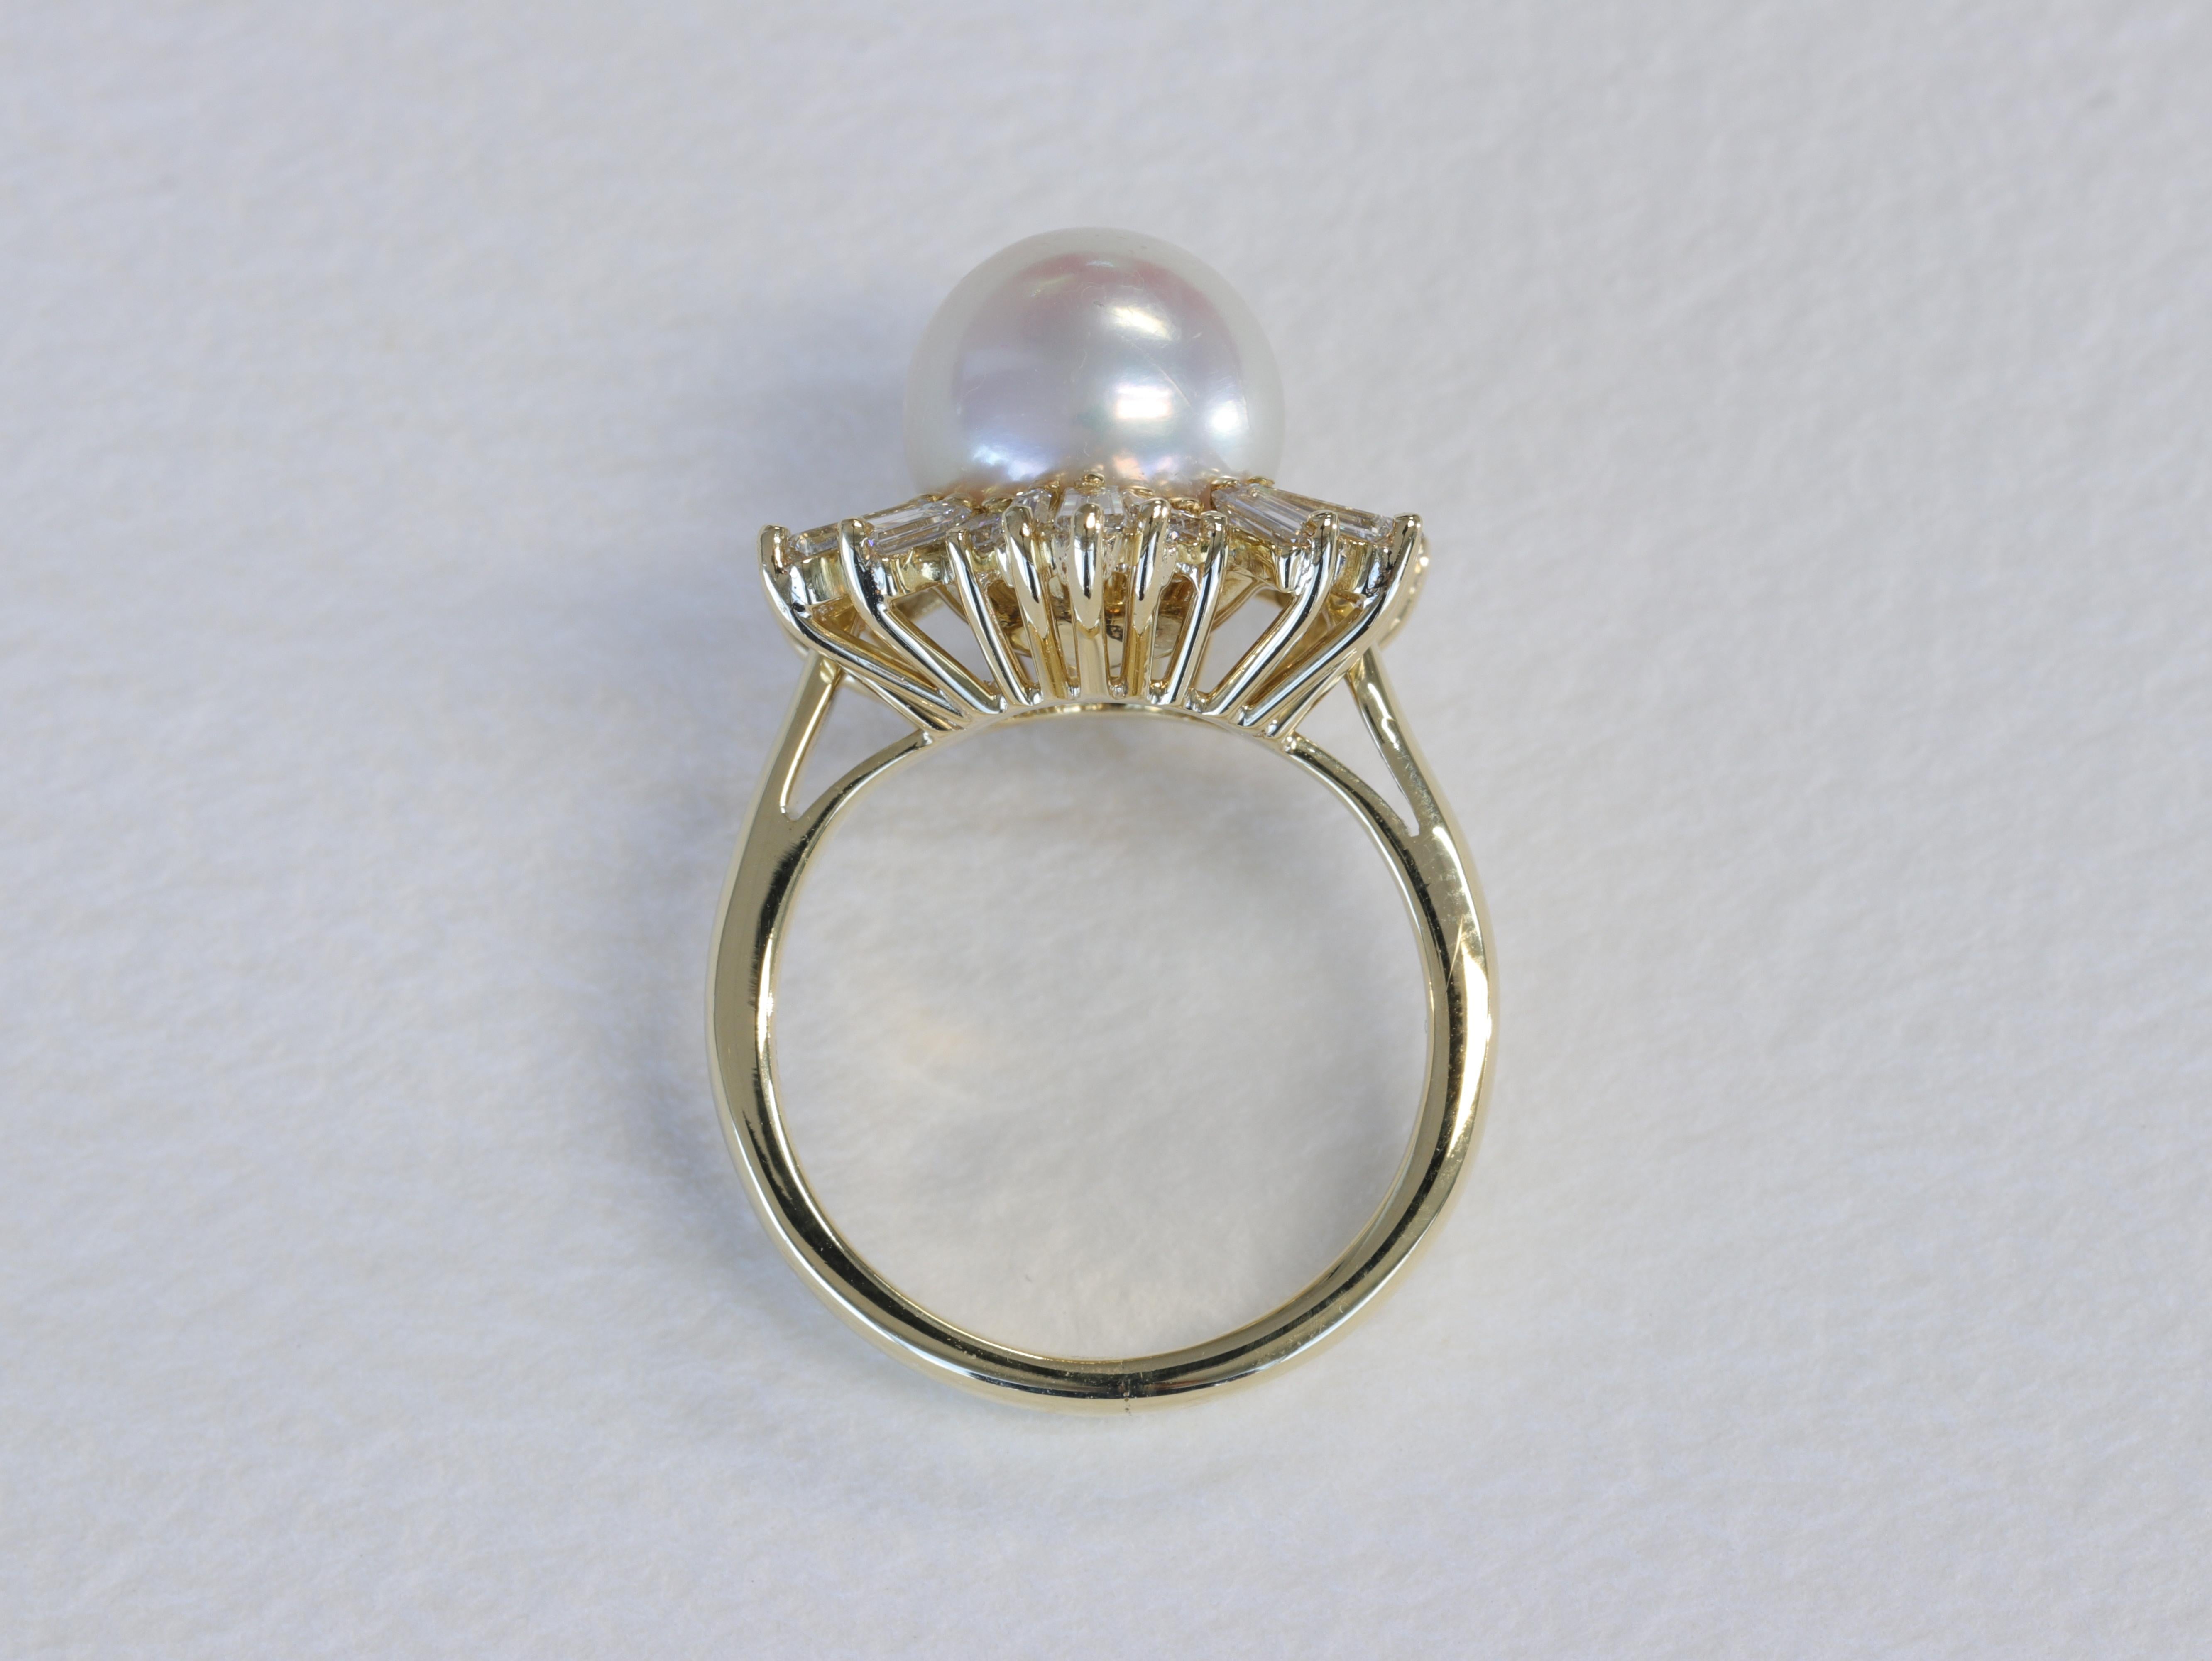 Cette spectaculaire bague Mikimoto à motif flocon de neige présente une belle perle ronde entourée d'un halo de diamants baguettes et ronds de taille brillante de différentes tailles et de qualité supérieure, dans une bague en or jaune 18 carats